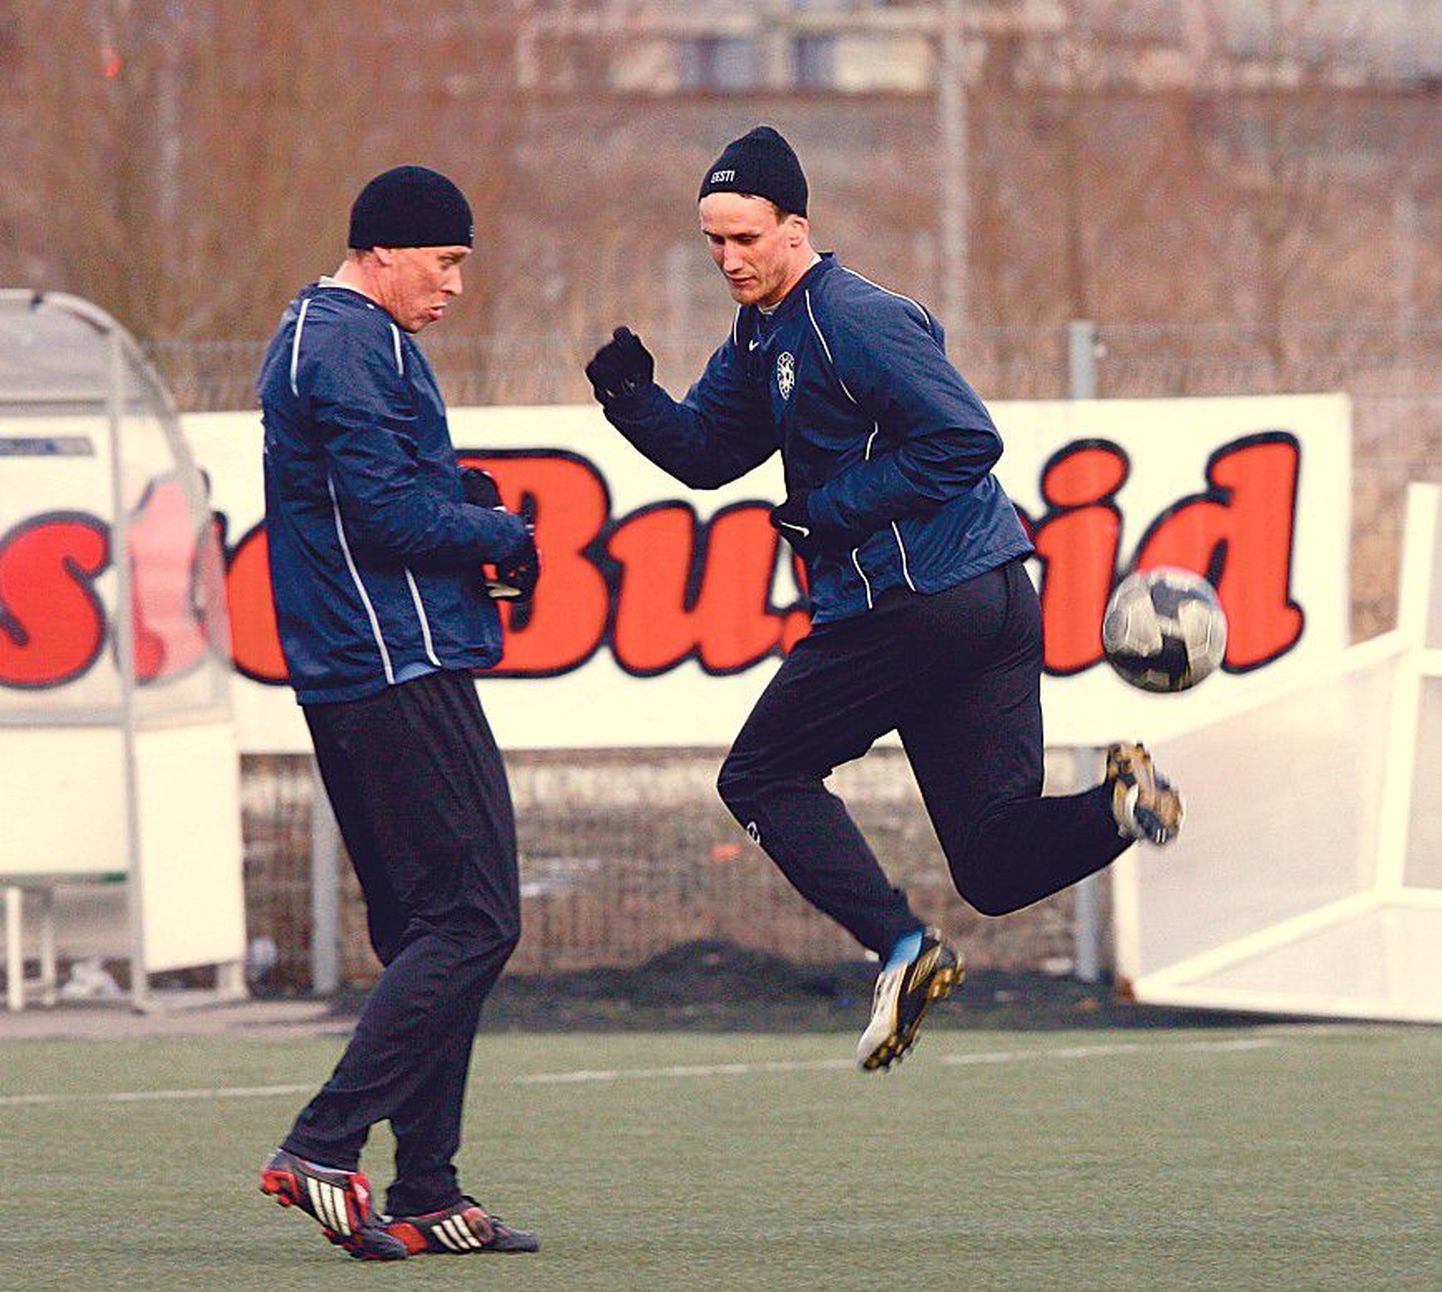 Капитан эстонской сборной Пийроя верит, что в  матче против сборной Армении у эстонцев есть преимущества. На фото он демонстрирует Ряхну свои навыки.